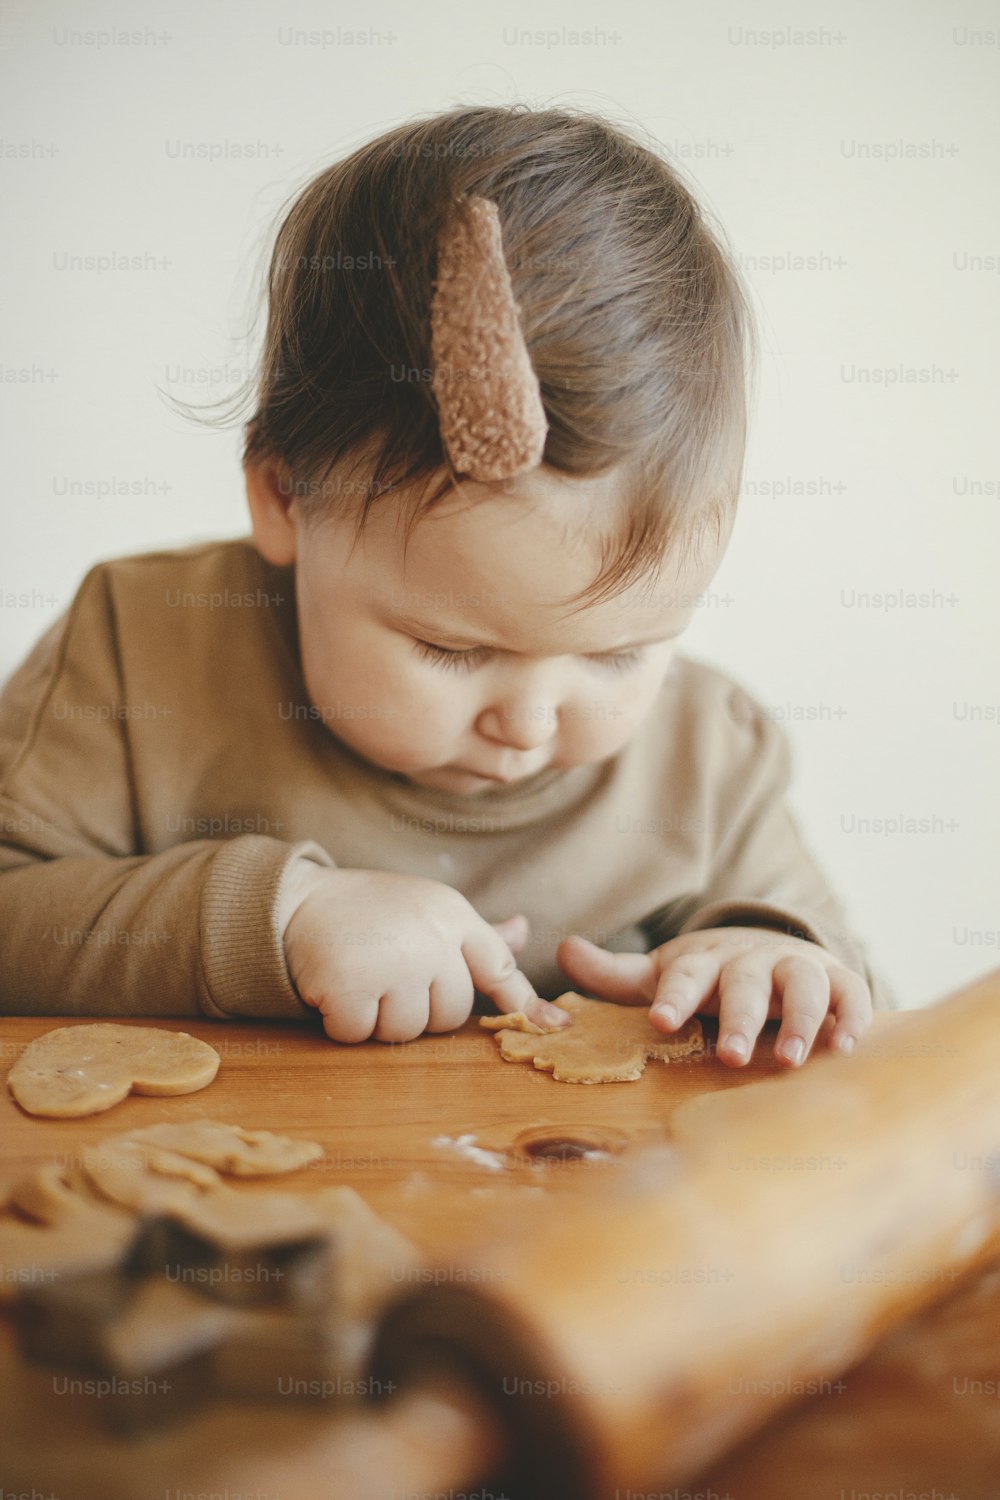 Bambina carina che fa biscotti di natale sul tavolo disordinato, primo piano. Adorabile figlia del bambino che aiuta la madre e taglia l'impasto per i biscotti di pan di zenzero. Momenti belli, preparativi per le vacanze